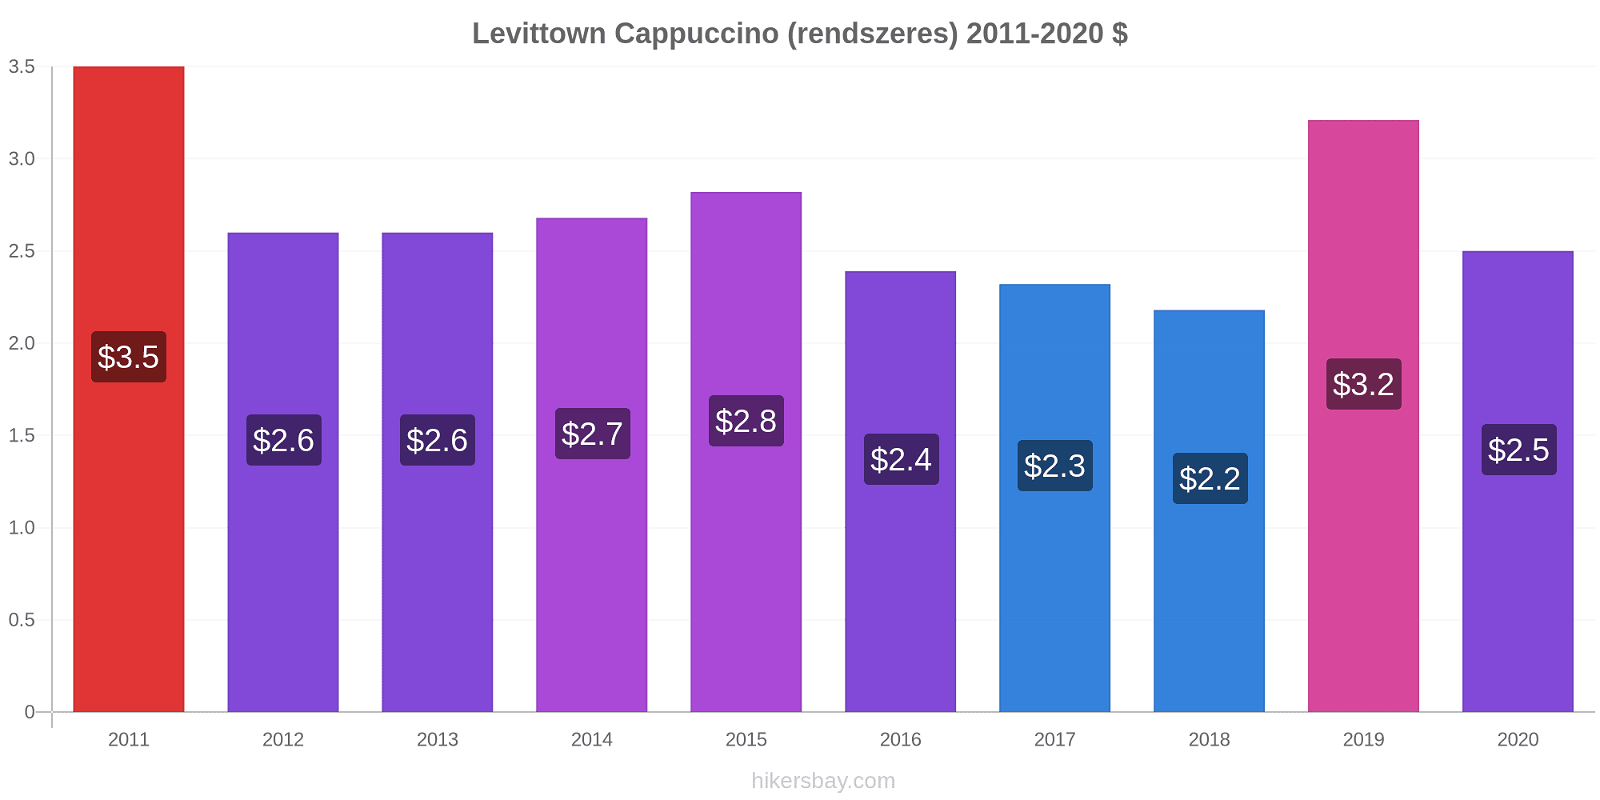 Levittown árváltozások Cappuccino (rendszeres) hikersbay.com